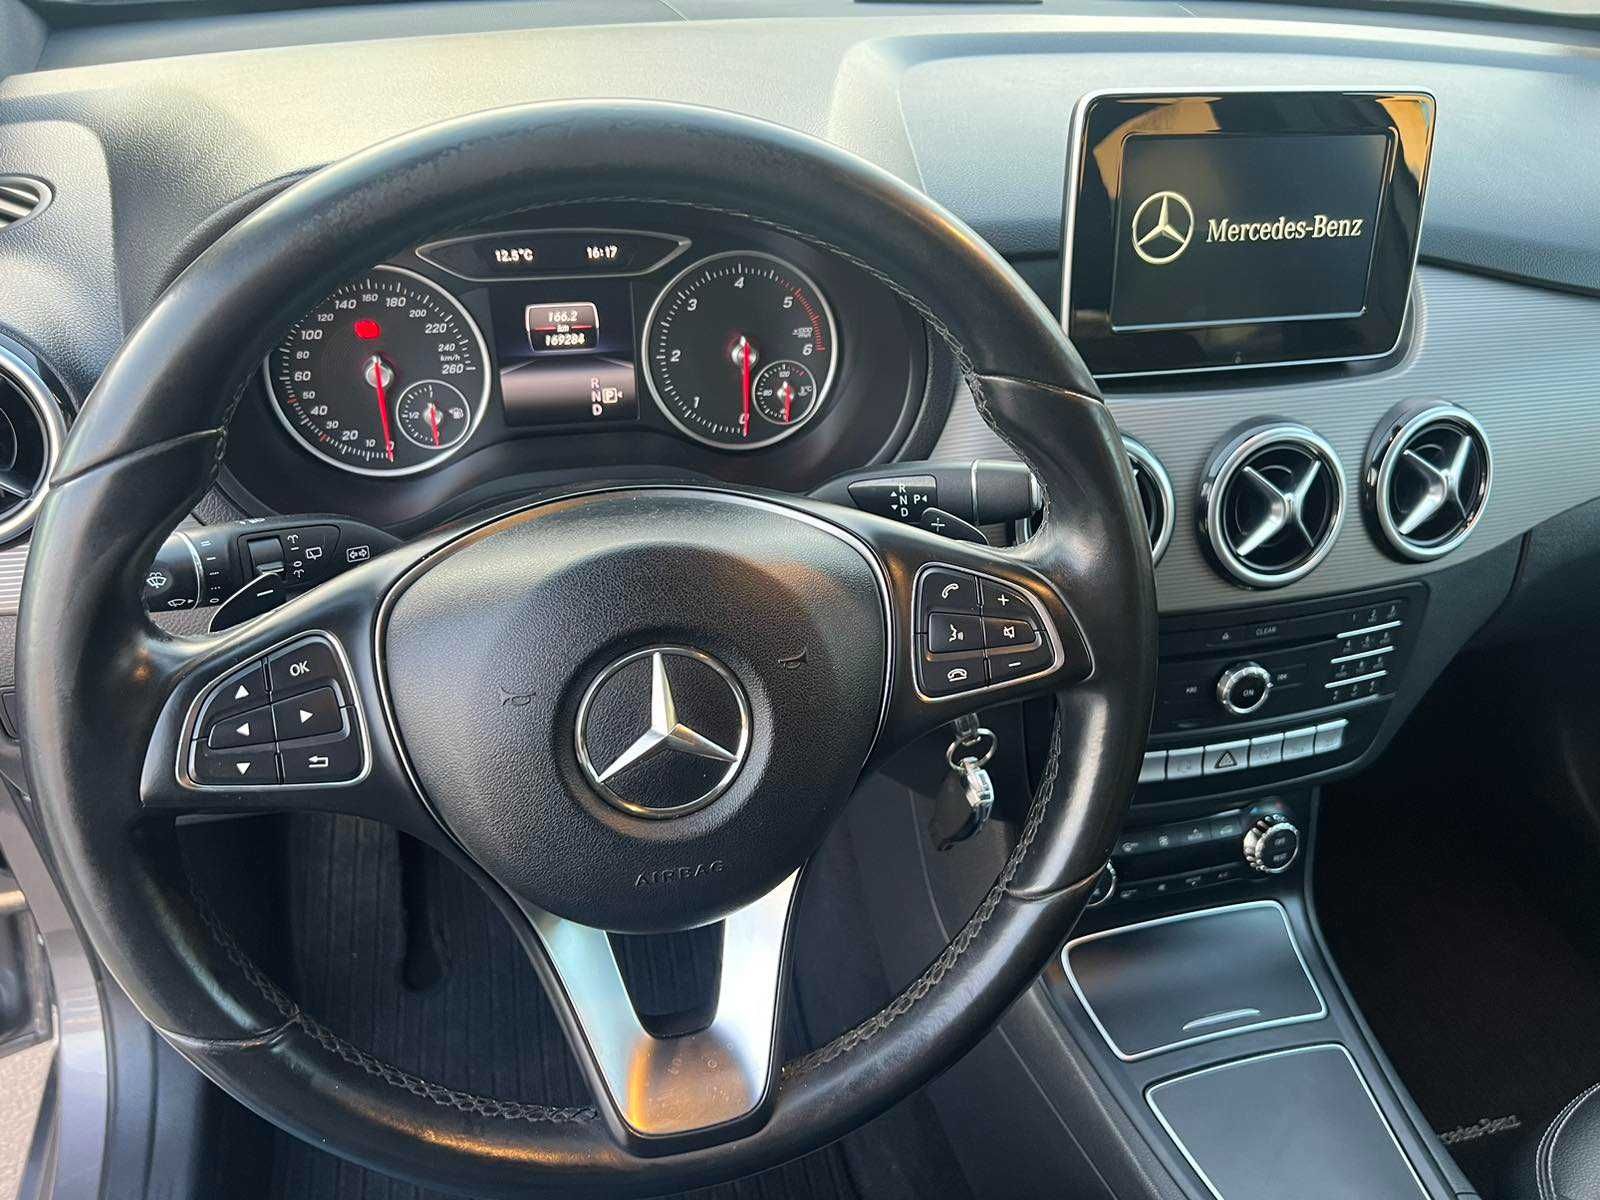 Mercedes-Bens B-Class Мерседес Б-клас 2015 року дизель автомат 177 к.с